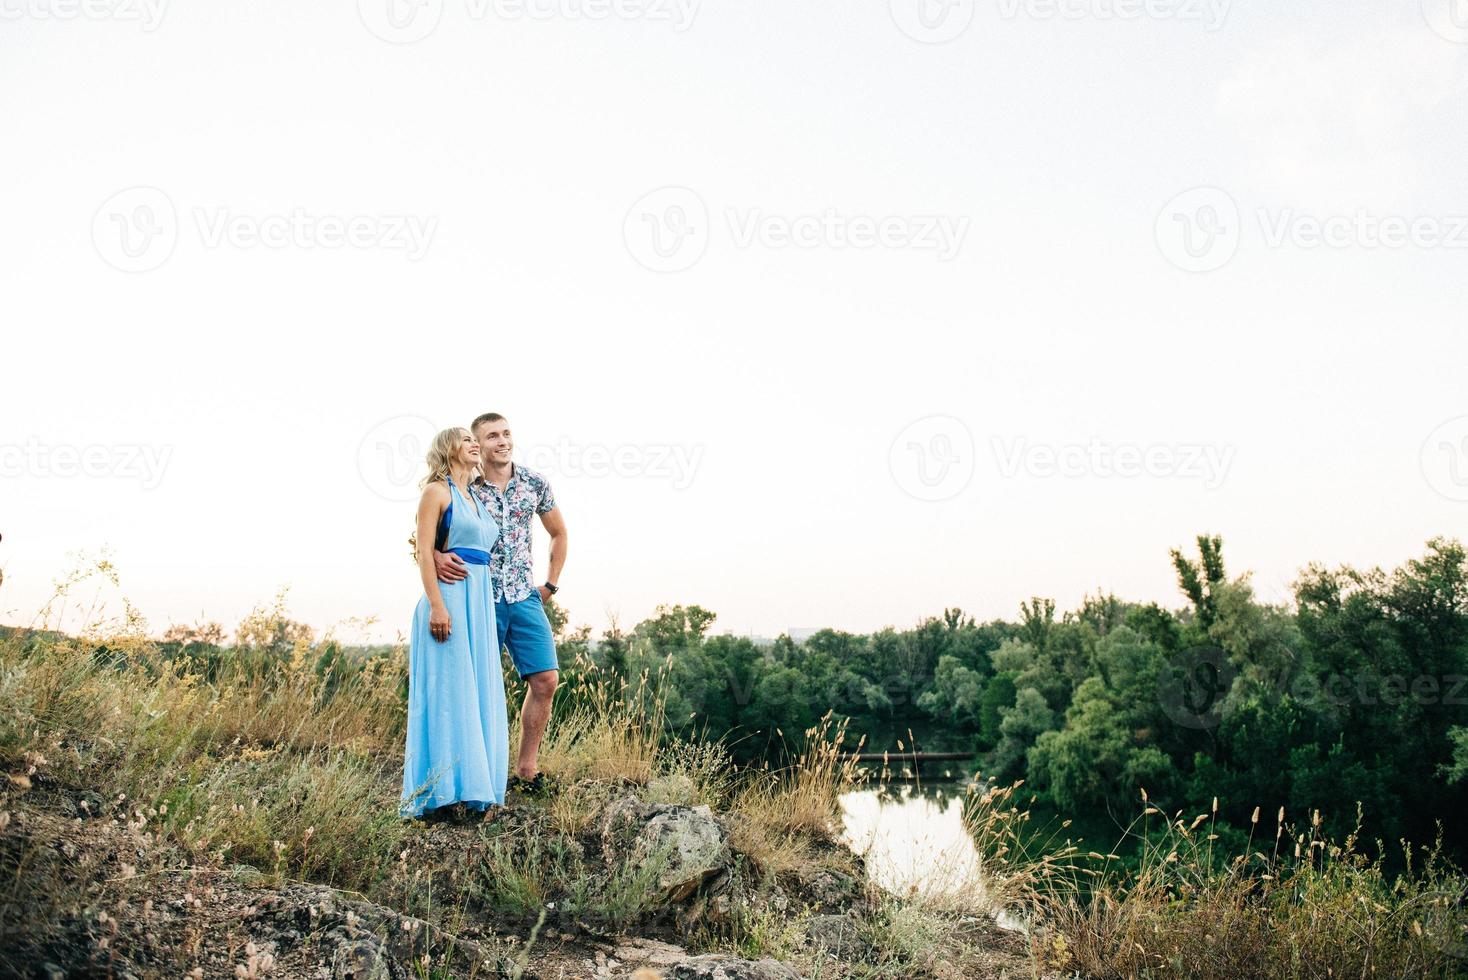 blondes Mädchen mit losen Haaren in einem hellblauen Kleid und einem Mann im Licht des Sonnenuntergangs foto